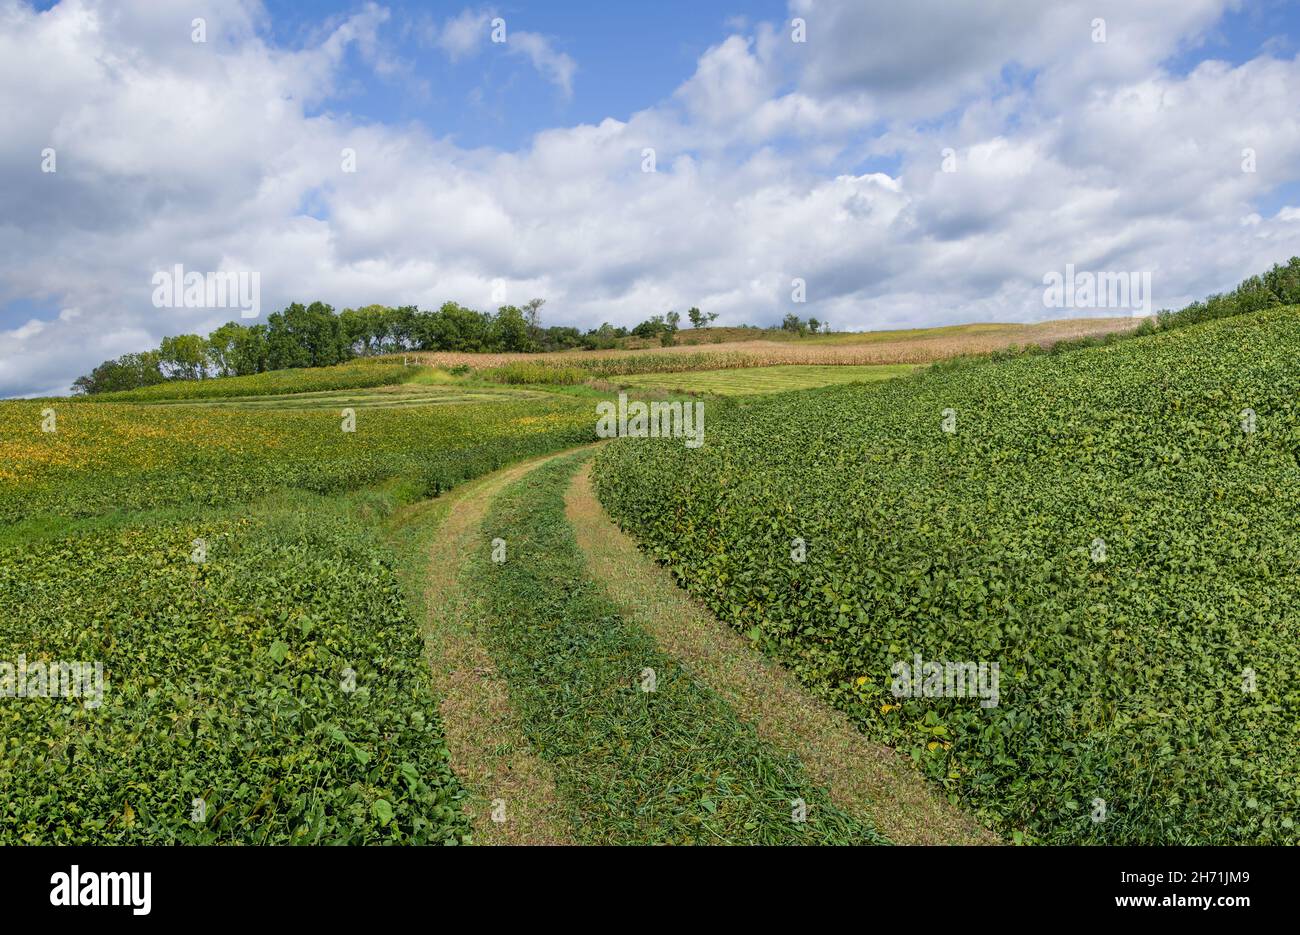 Ferme de soja : un sentier herbacé mène à des champs de soja mûrissant dans une ferme du sud du Wisconsin. Banque D'Images